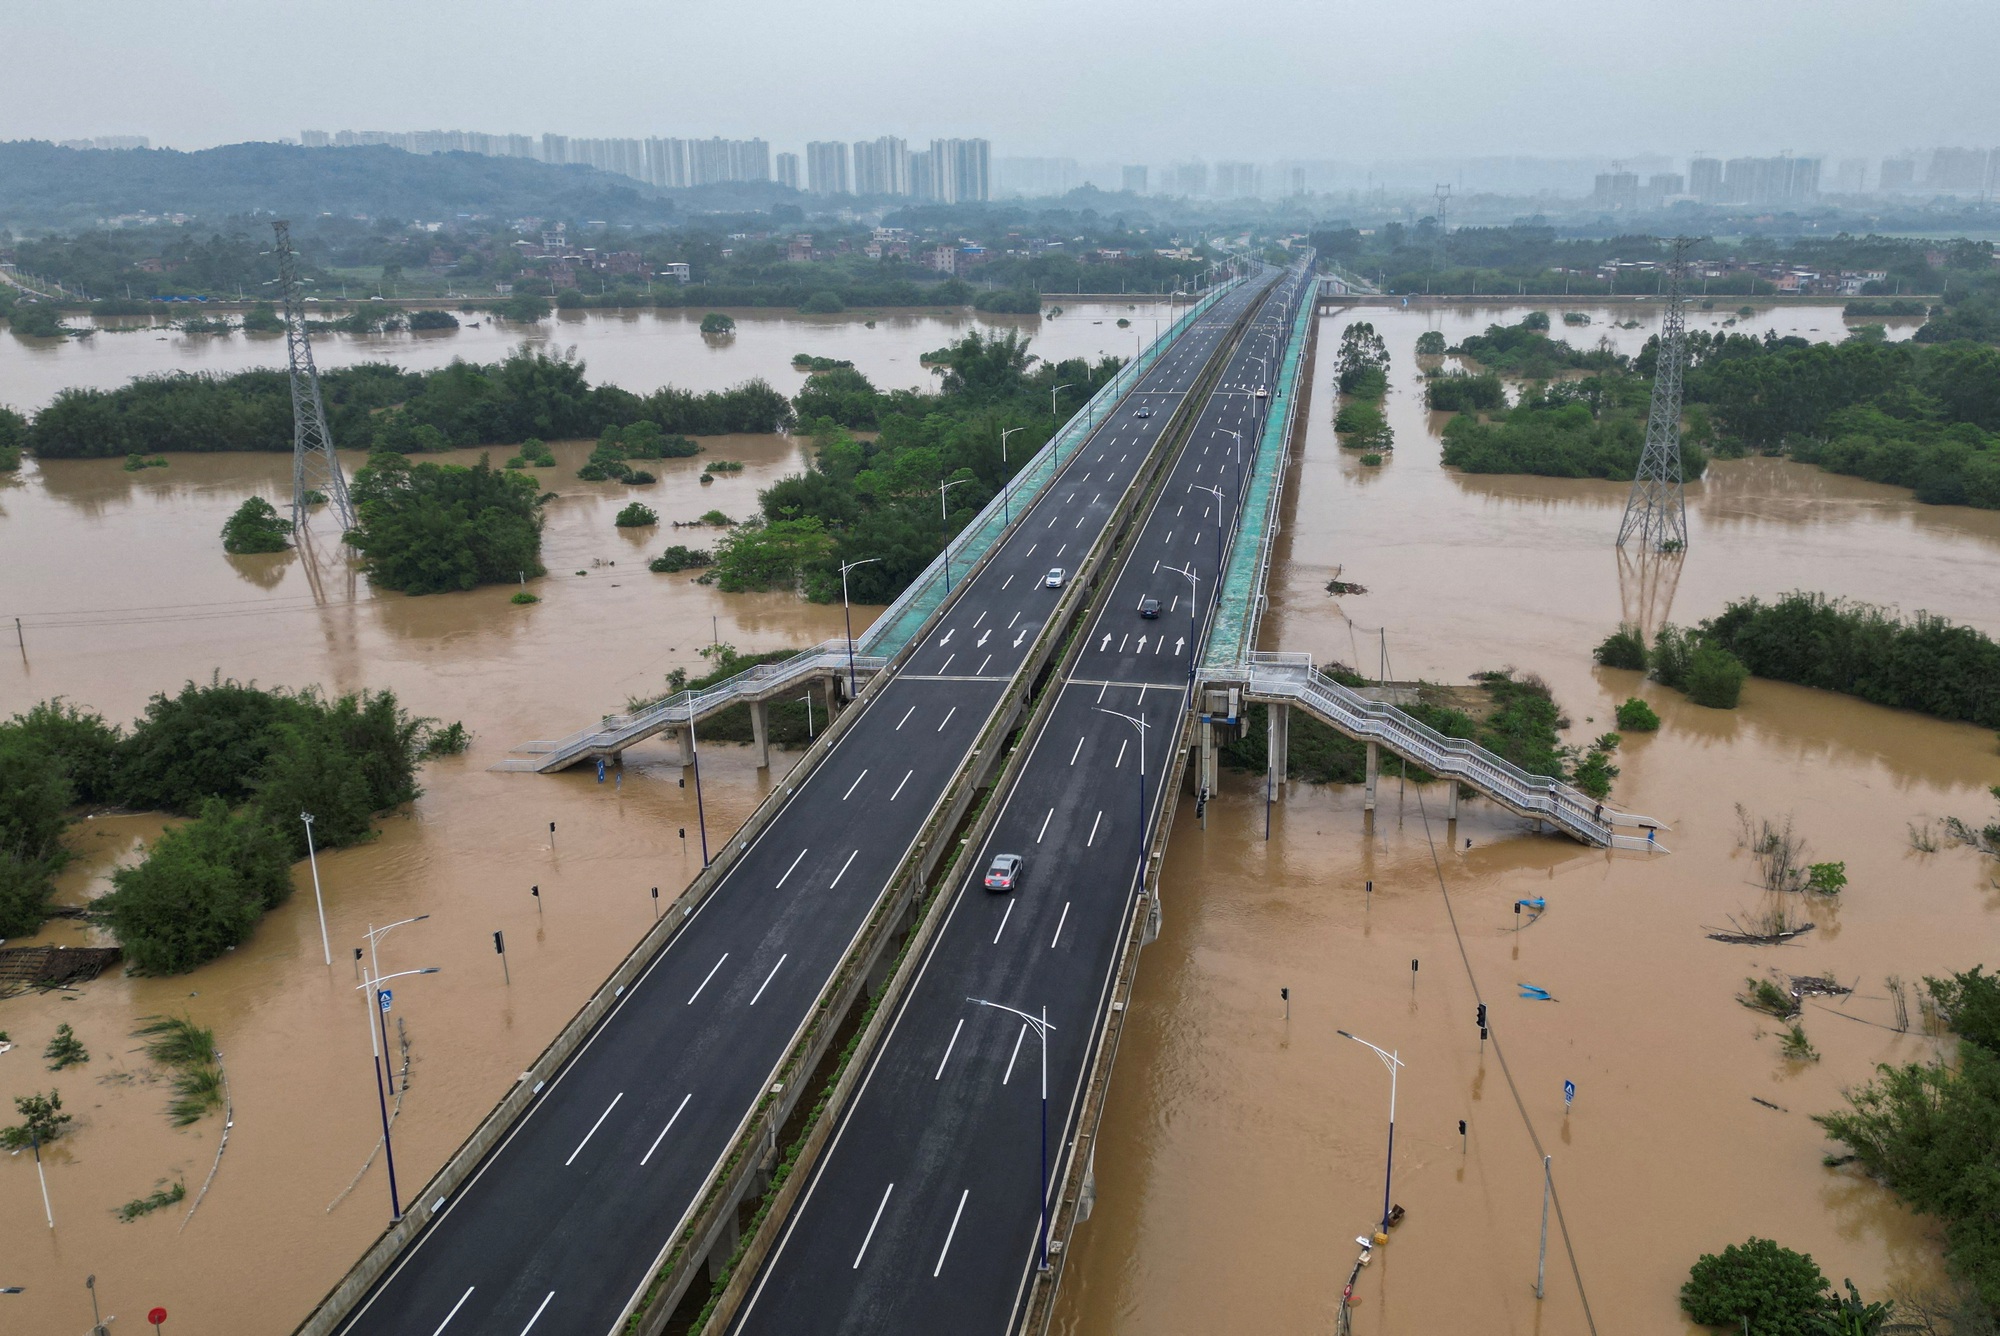 Ảnh, clip: Lũ lụt nghiêm trọng nhất trong 100 năm đổ bộ Trung Quốc, ảnh từ trên cao tiết lộ hiện trường kinh hoàng- Ảnh 5.